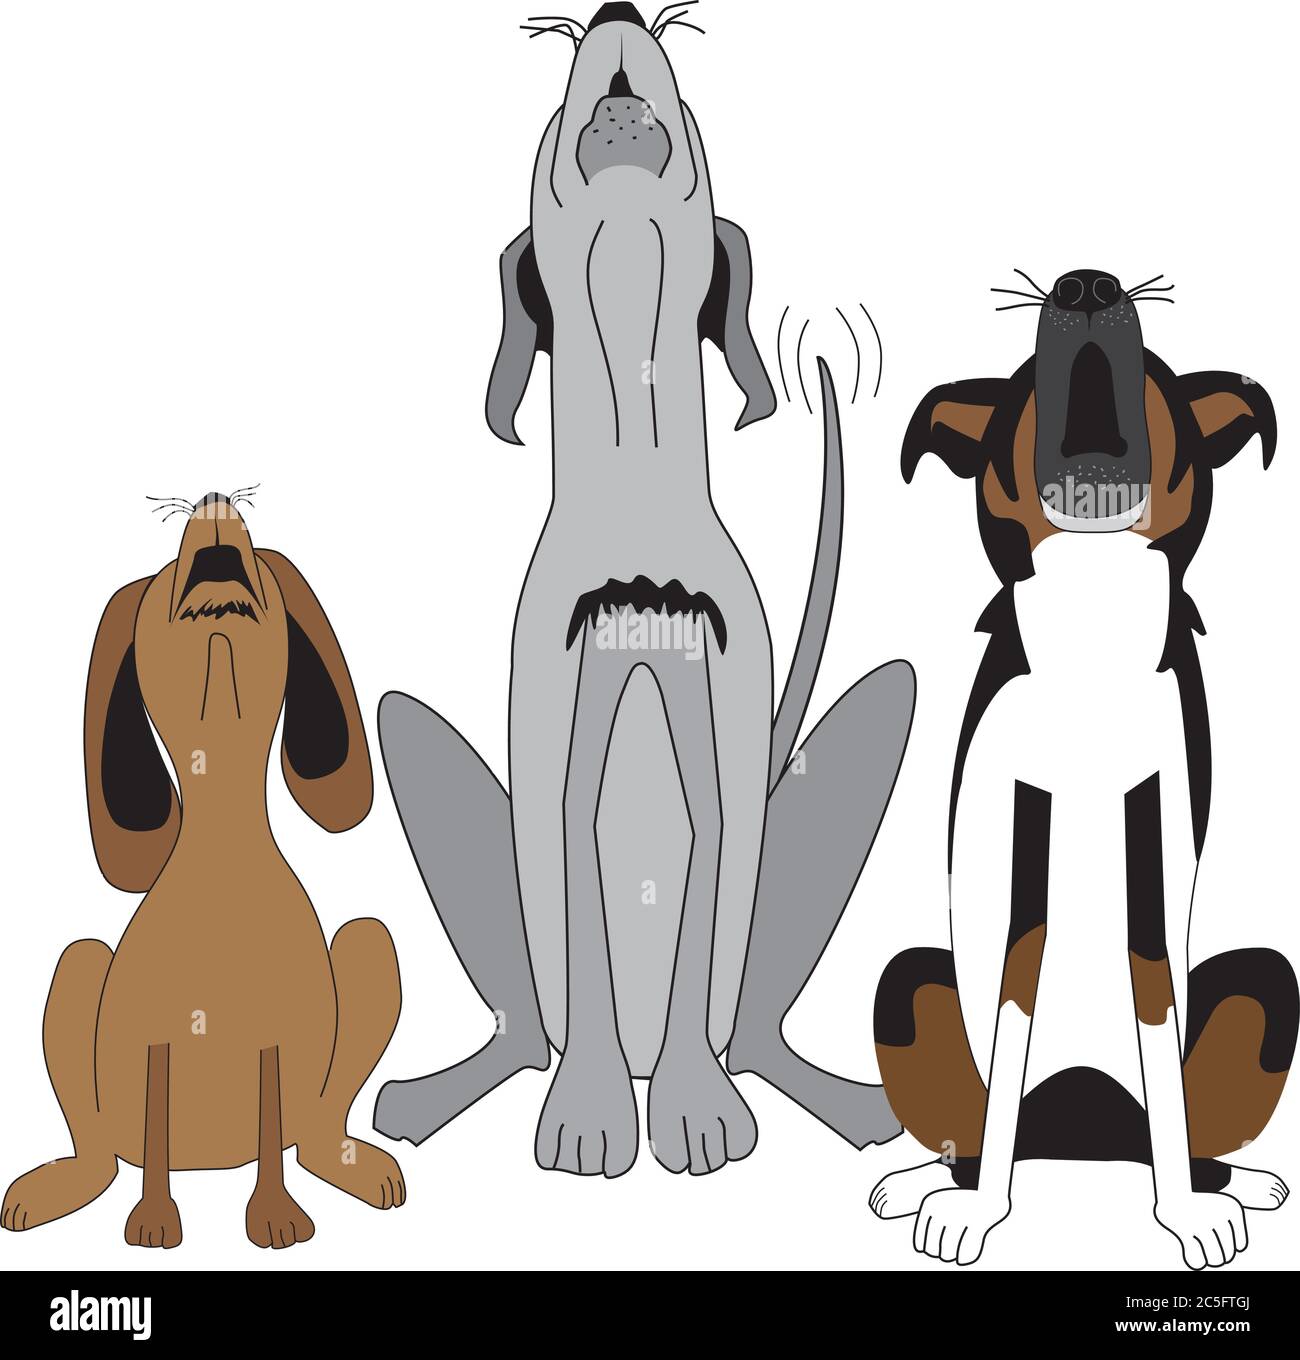 Fumetto umoristico di tre cani seduti in fila con le loro teste ribaltate indietro abbaiando, cantando o urlando ad alta voce. Illustrazione Vettoriale